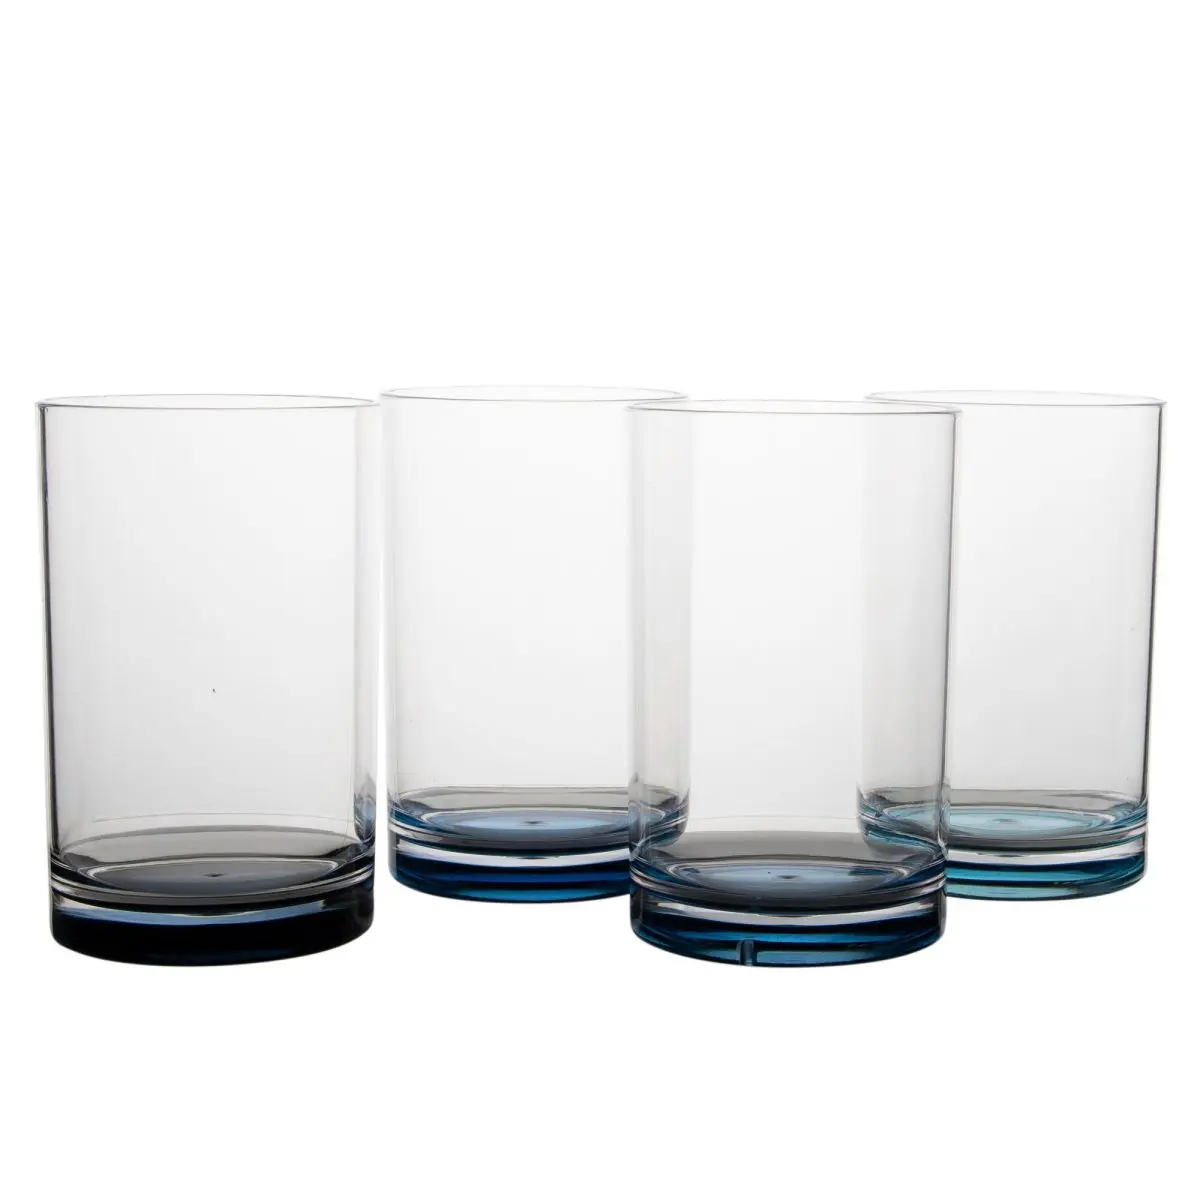 Trinkglser 4er-Set - Trinkglas 300 ml, blau